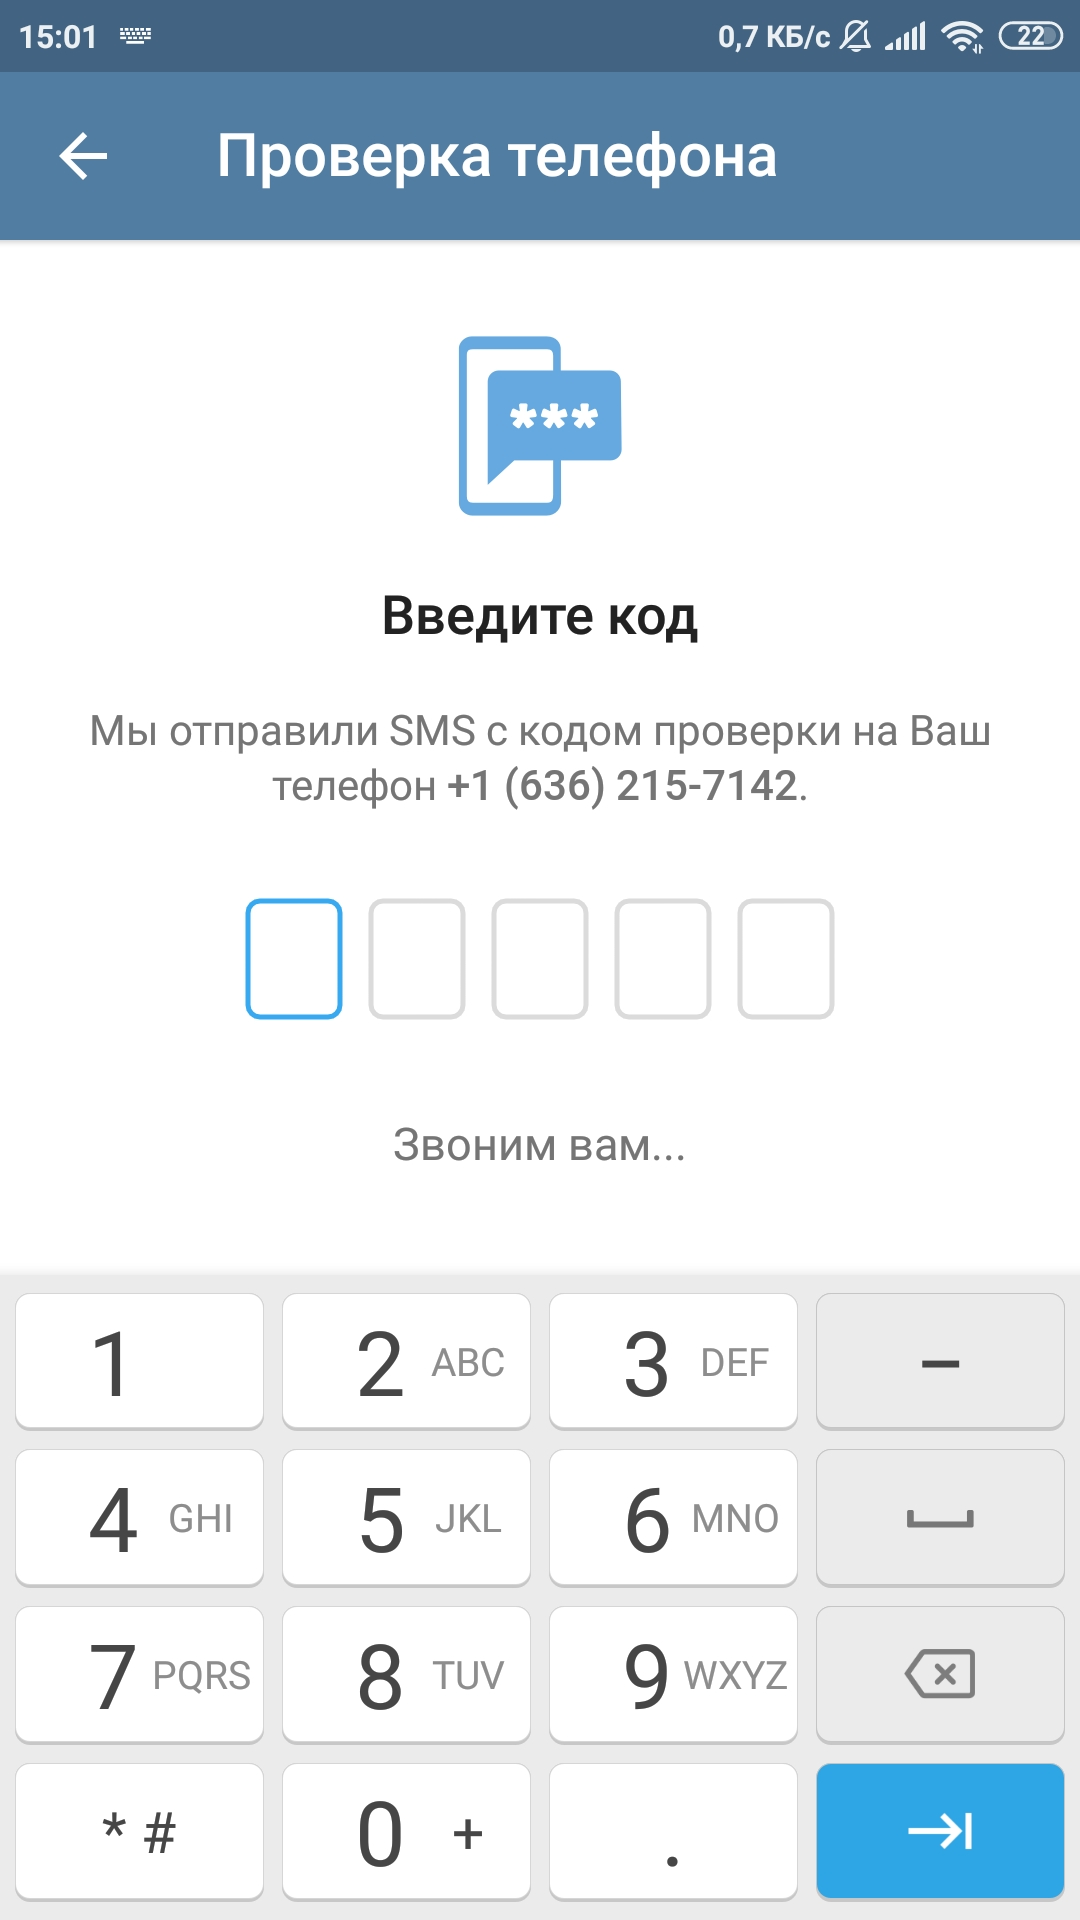 Бесплатные номера телефонов для телеграмма россия. Виртуальный номер для телеграмма. Виртуальный номер для телеграм. Номера для регистрации в телеграмме. Одноразовые номера для тг.